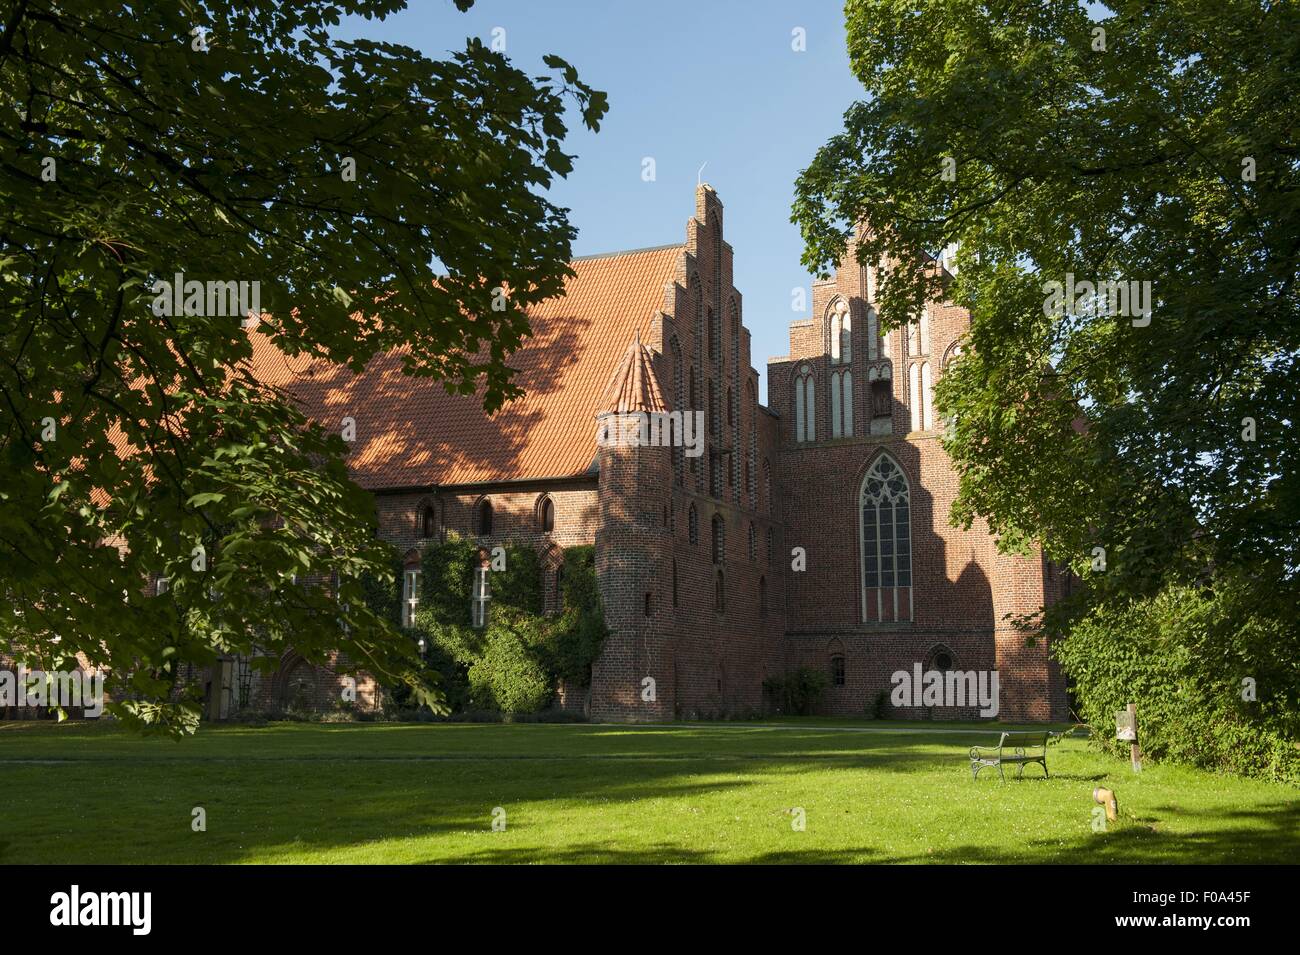 Wienhausen Abbey in Lower Saxony, Germany Stock Photo